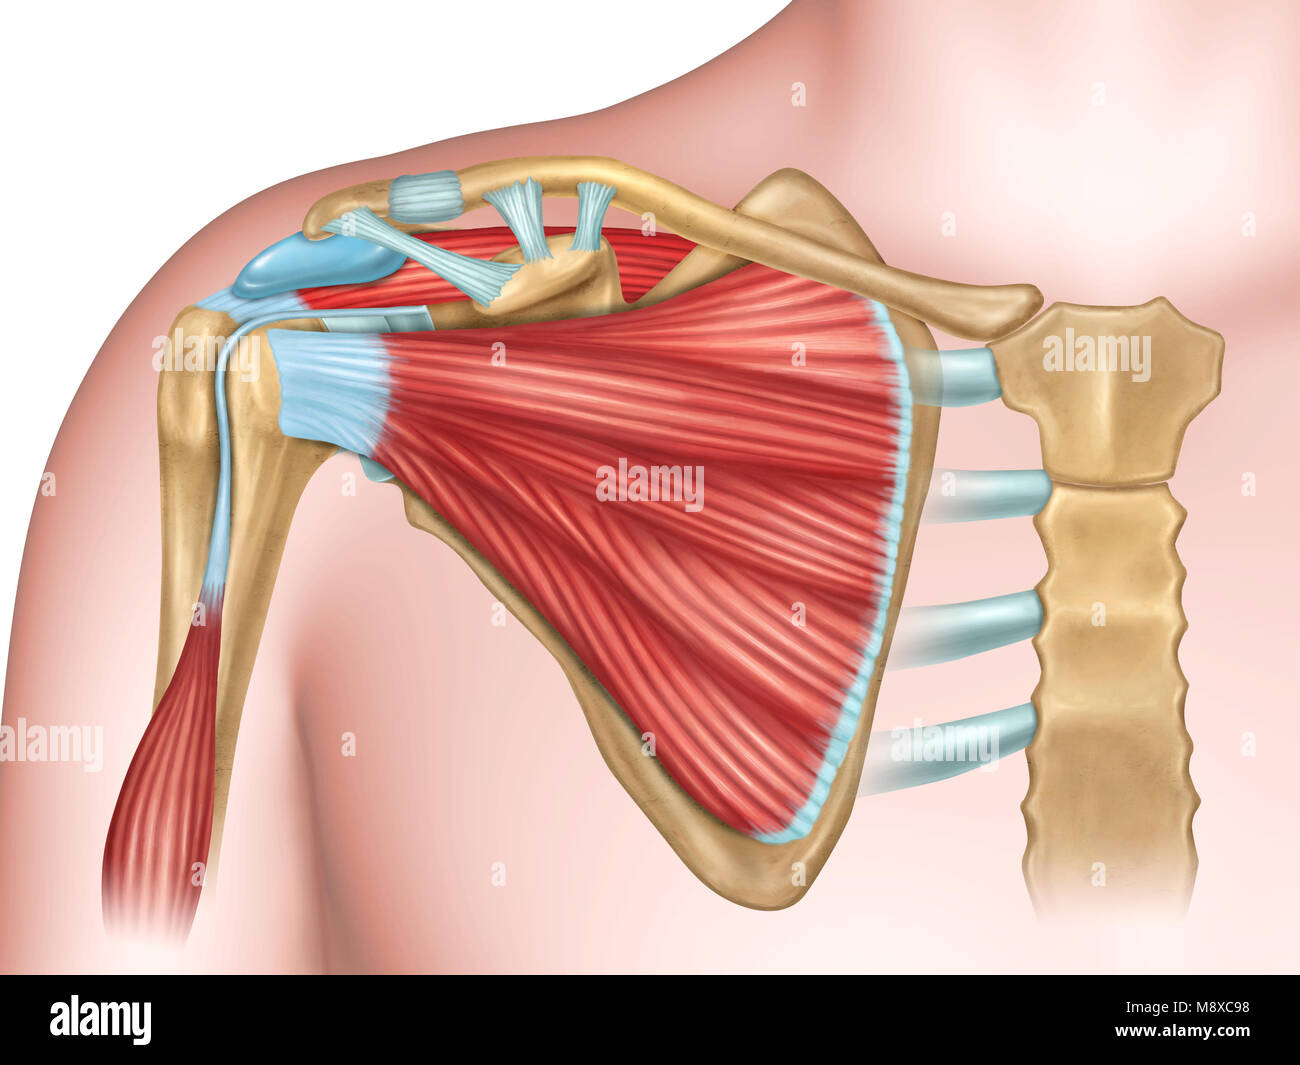 Anteriore Ansicht der Schulter Anatomie. Digitale Illustration. Stockfoto